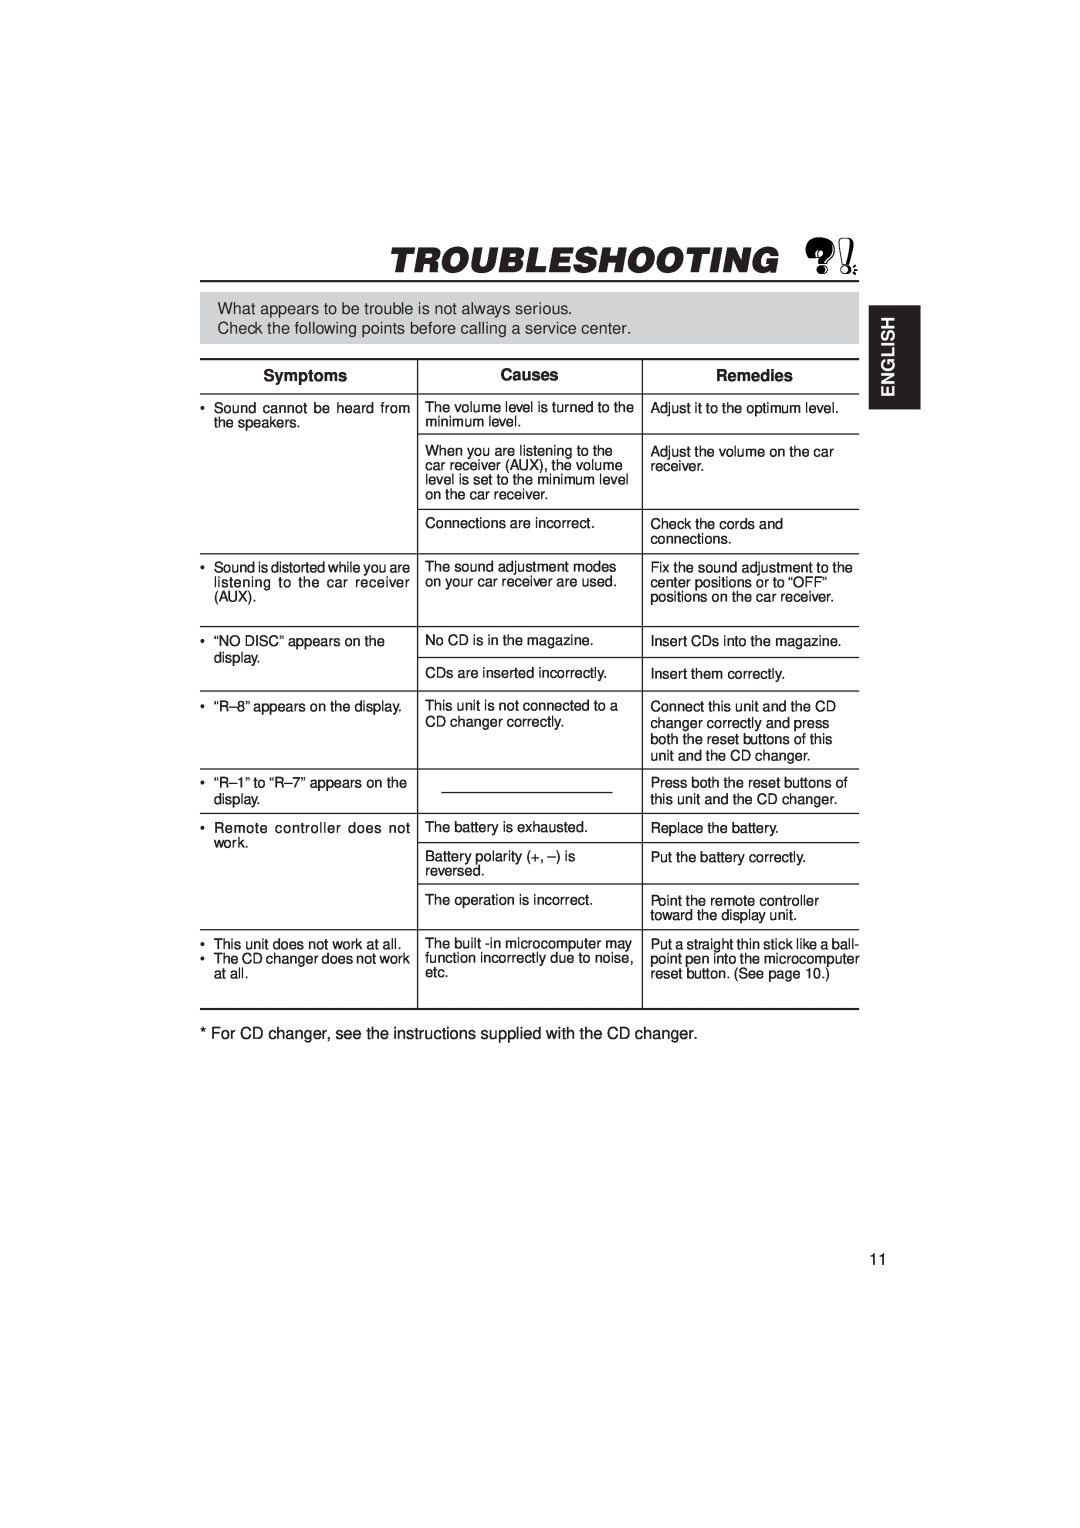 JVC KV-RA2 manual Troubleshooting, English, Symptoms, Causes, Remedies 